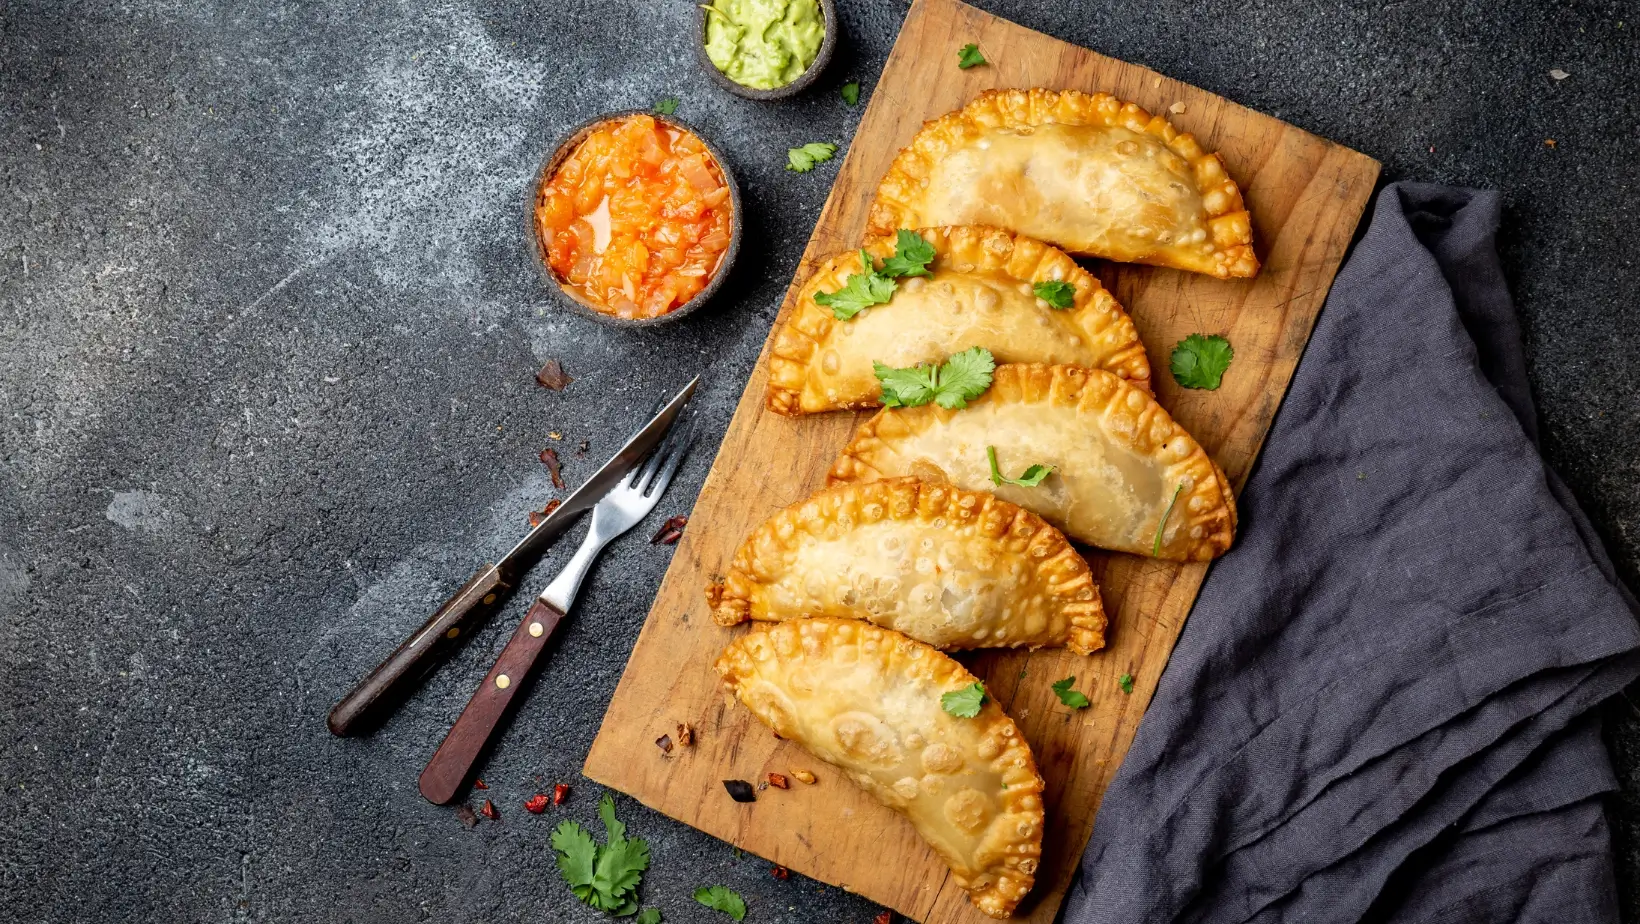 Featured Recipe: Empanadas